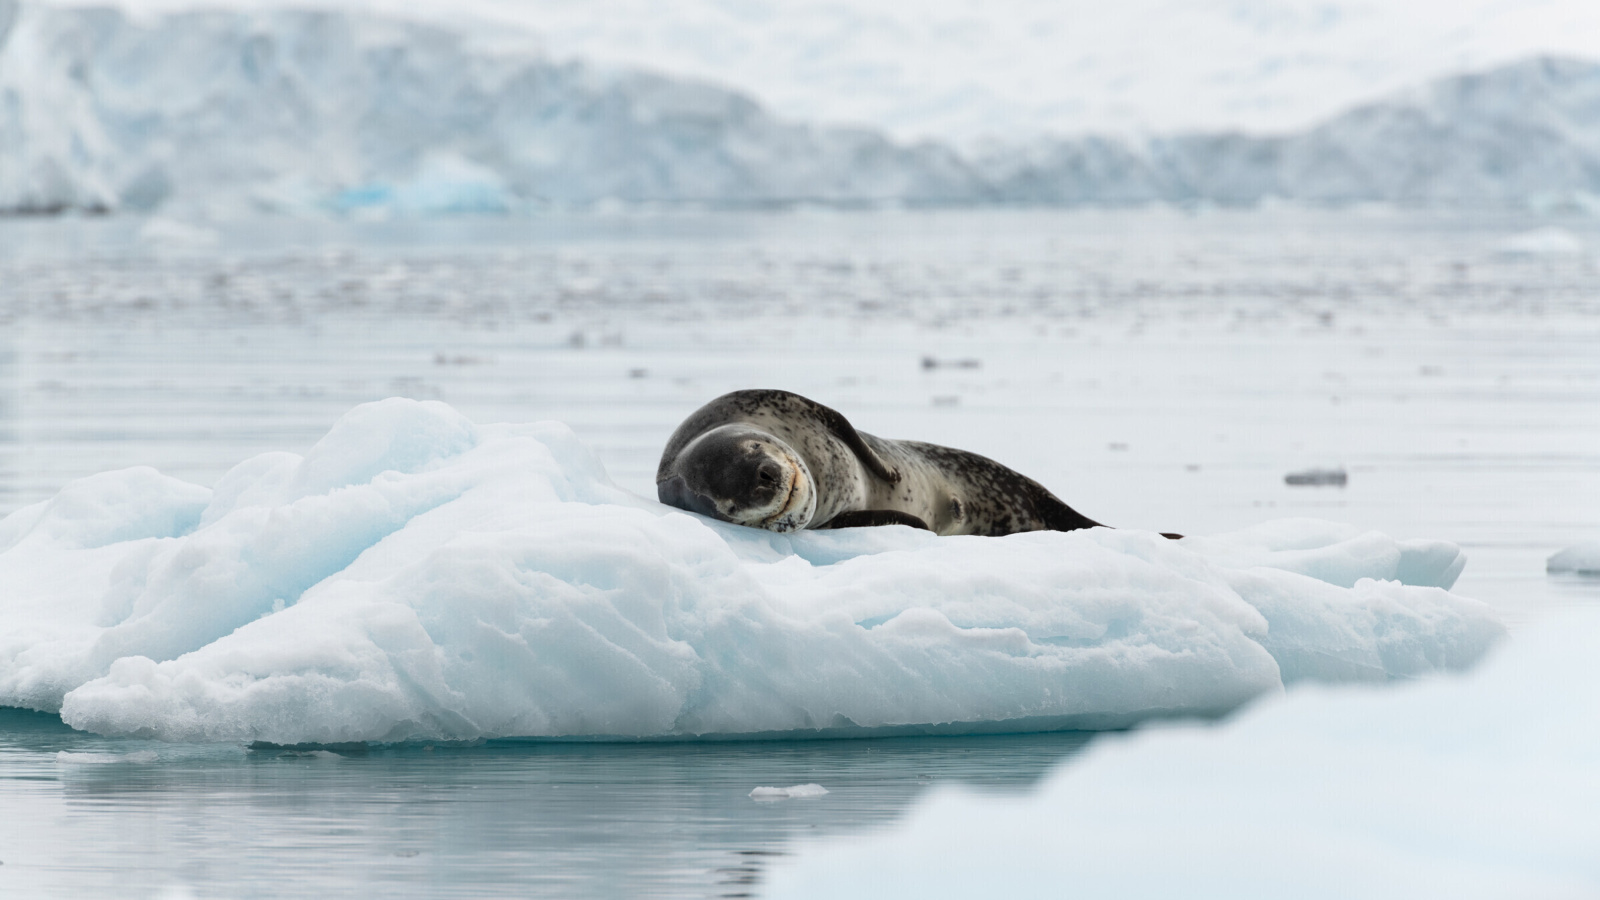 Leopard seal in ice of Antarctica wallpaper 1600x900